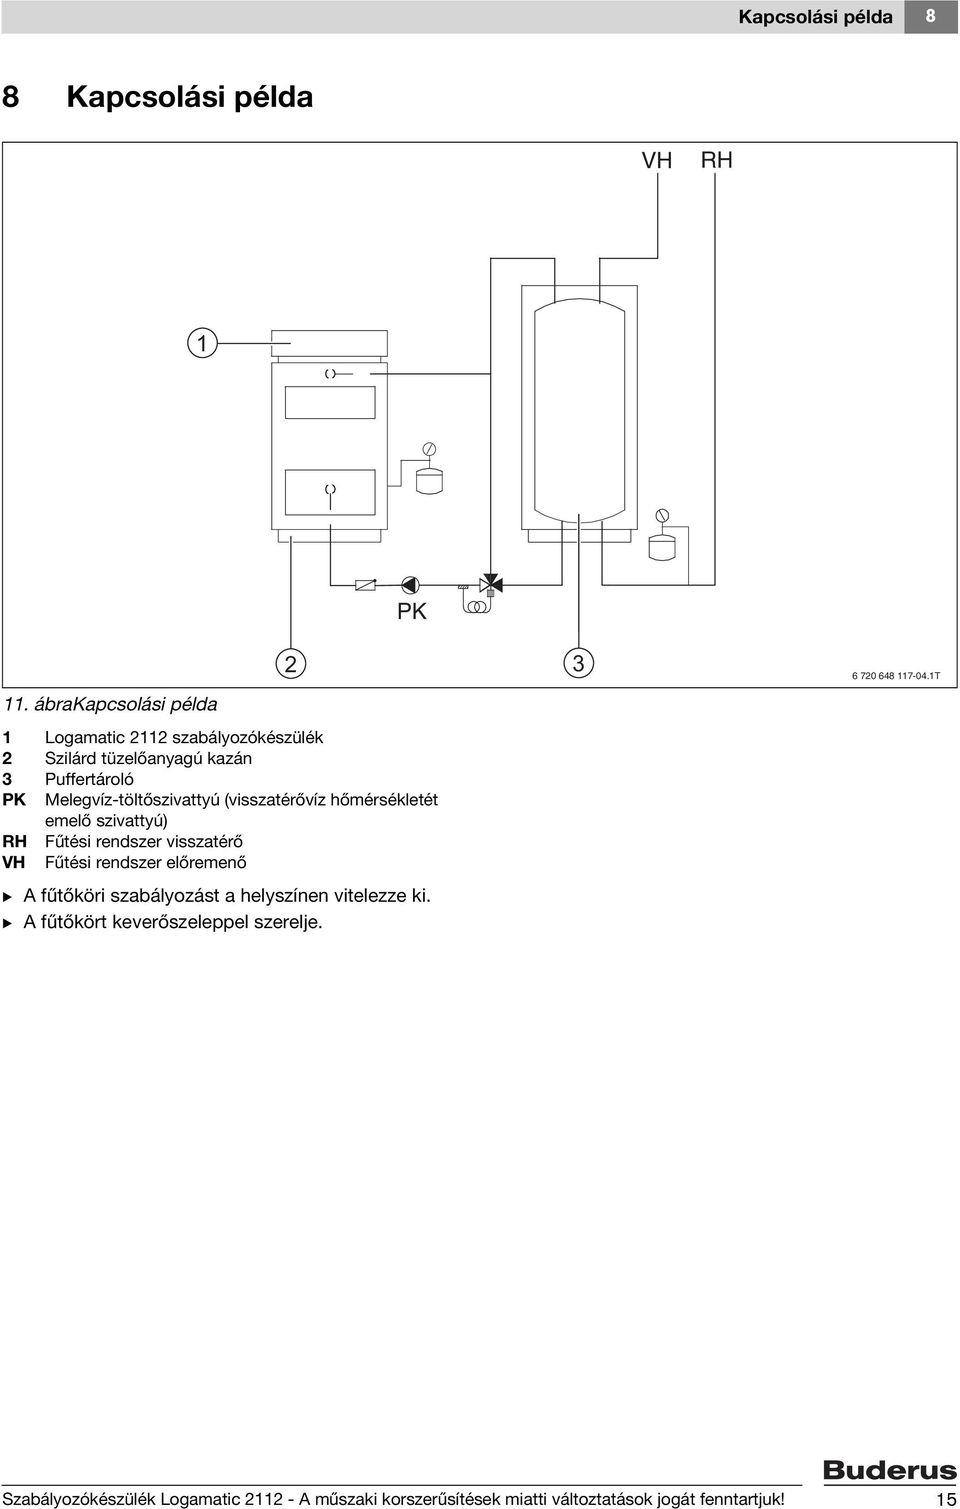 Melegvíz-töltőszivattyú (visszatérővíz hőmérsékletét emelő szivattyú) RH Fűtési rendszer visszatérő VH Fűtési rendszer